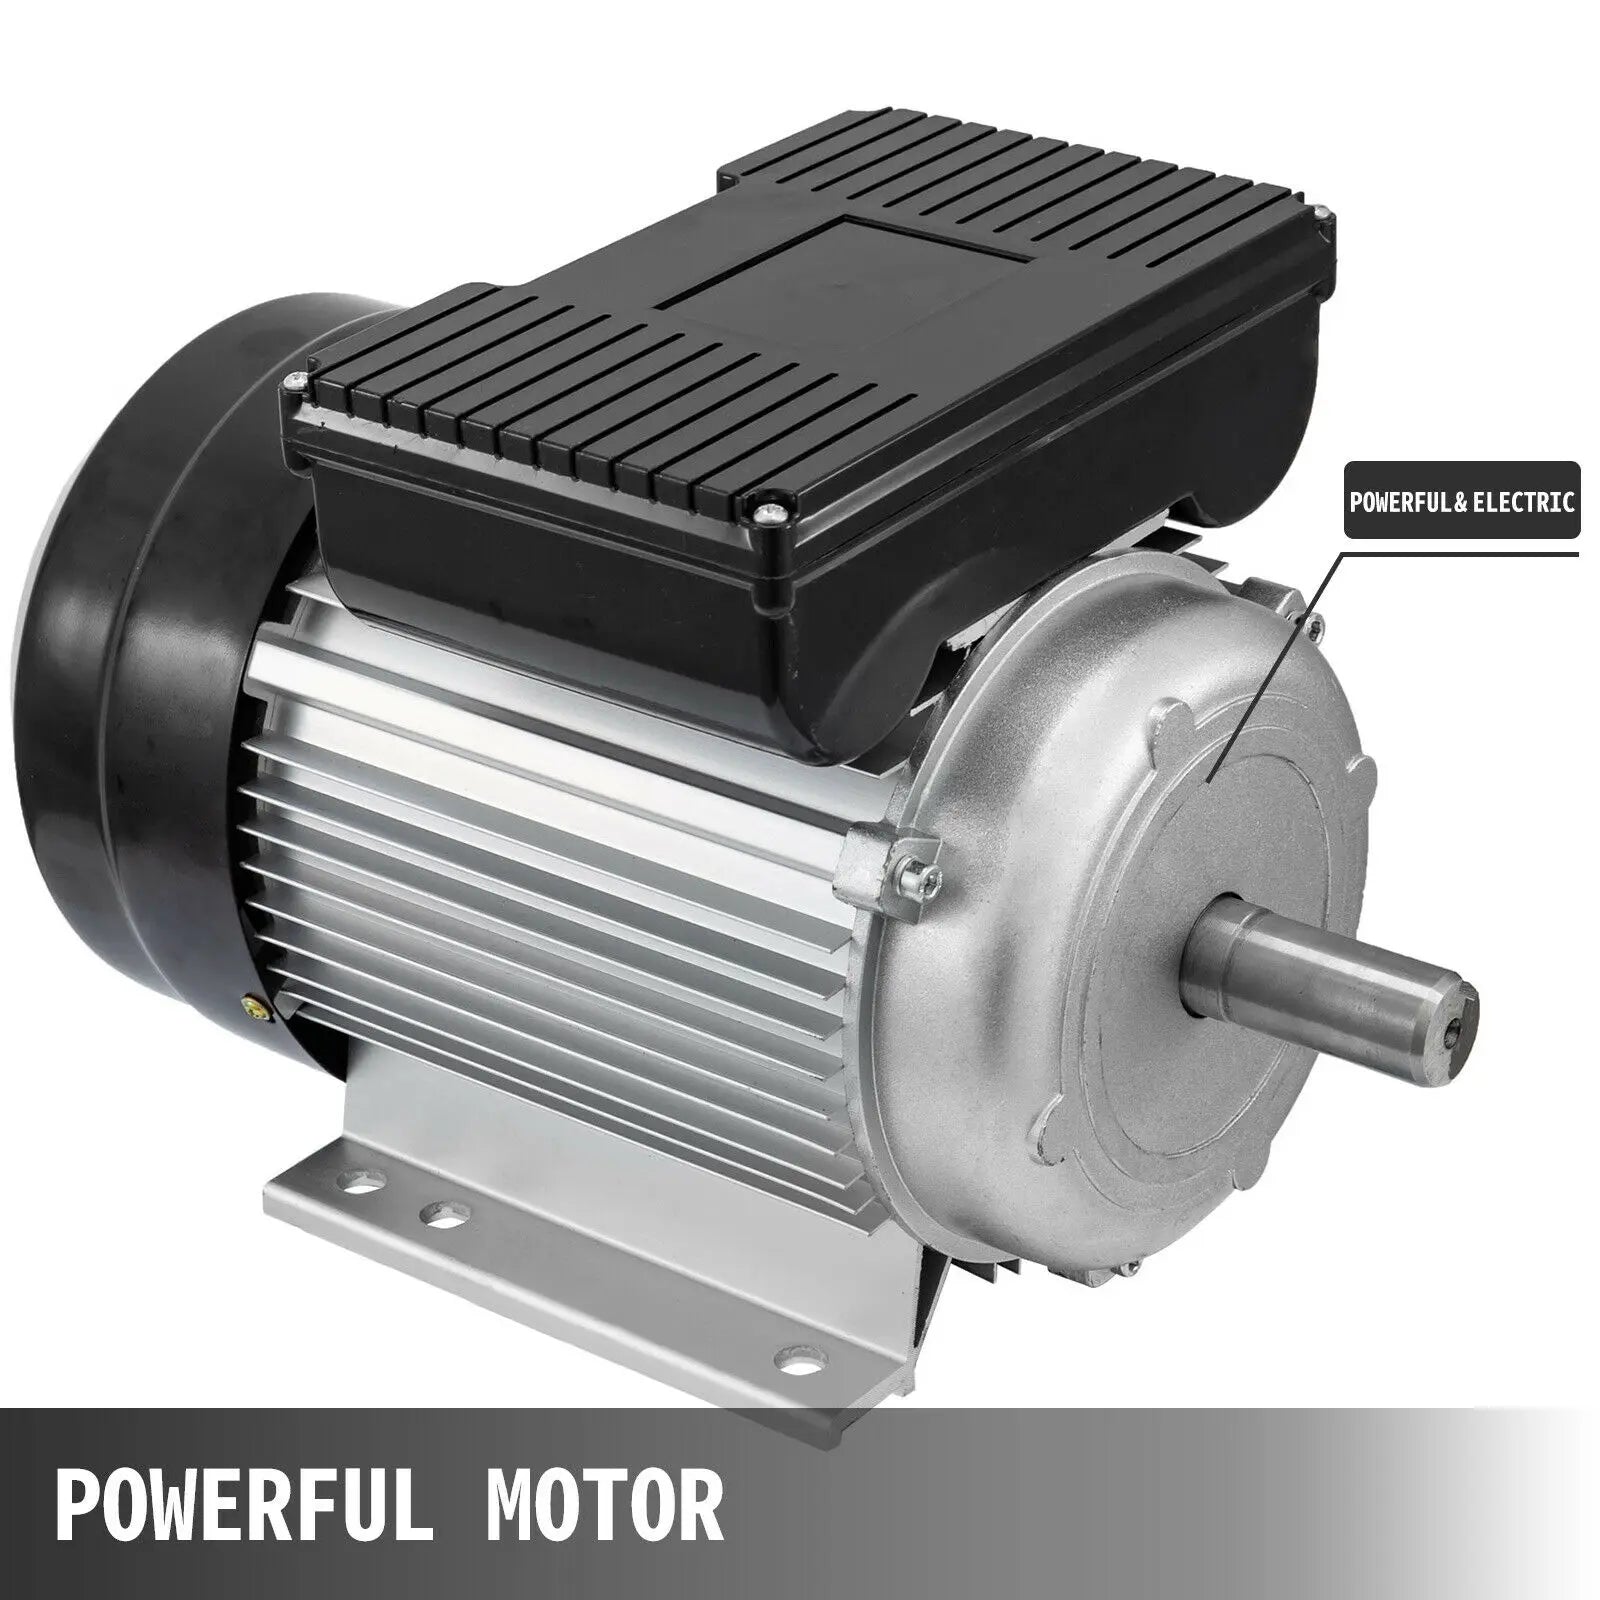 Air Compressor Motor, 22KW Power, IP55 Waterproof